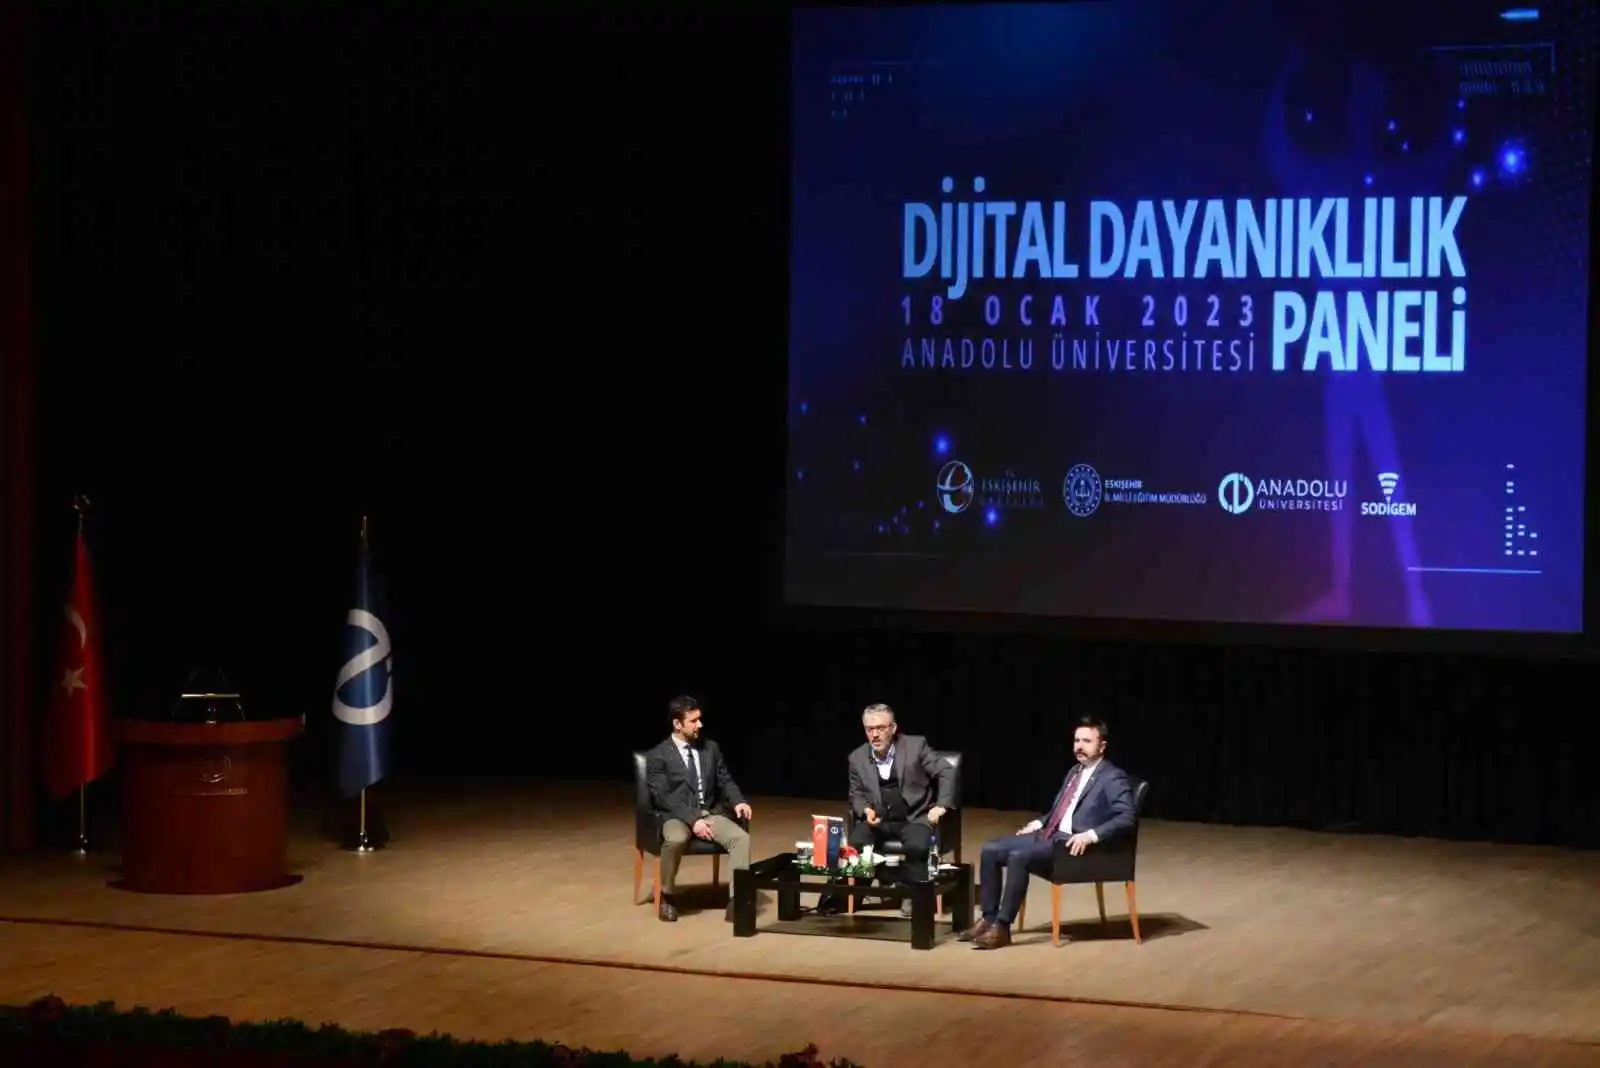 Anadolu Üniversitesinde "Dijital Dayanıklılık Paneli" gerçekleştirildi
